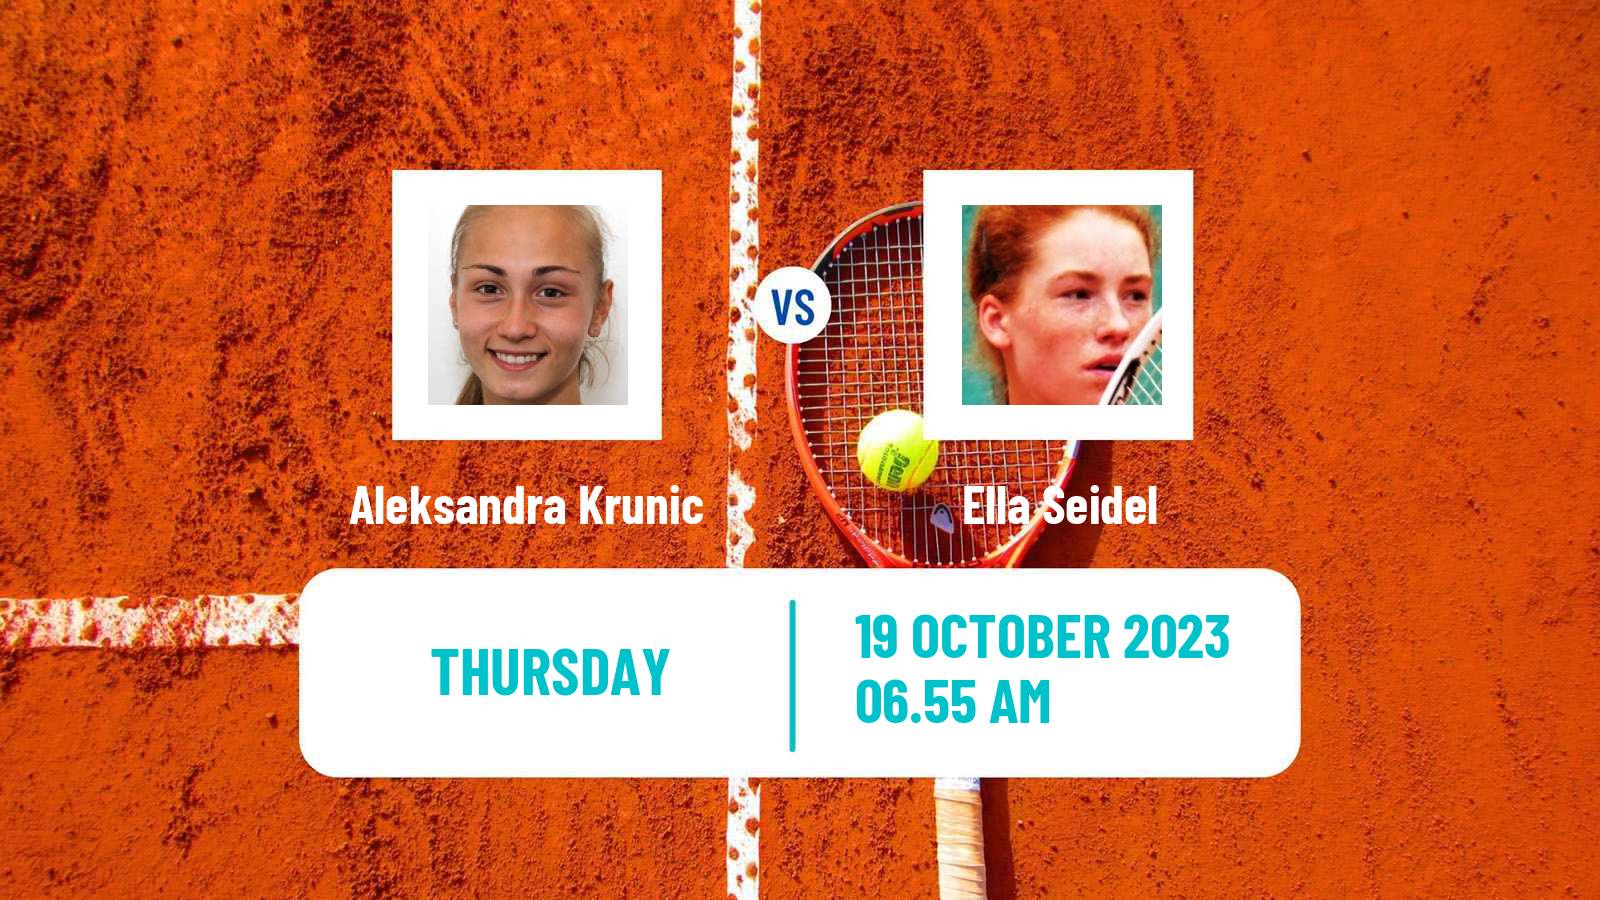 Tennis ITF W60 Hamburg Women Aleksandra Krunic - Ella Seidel